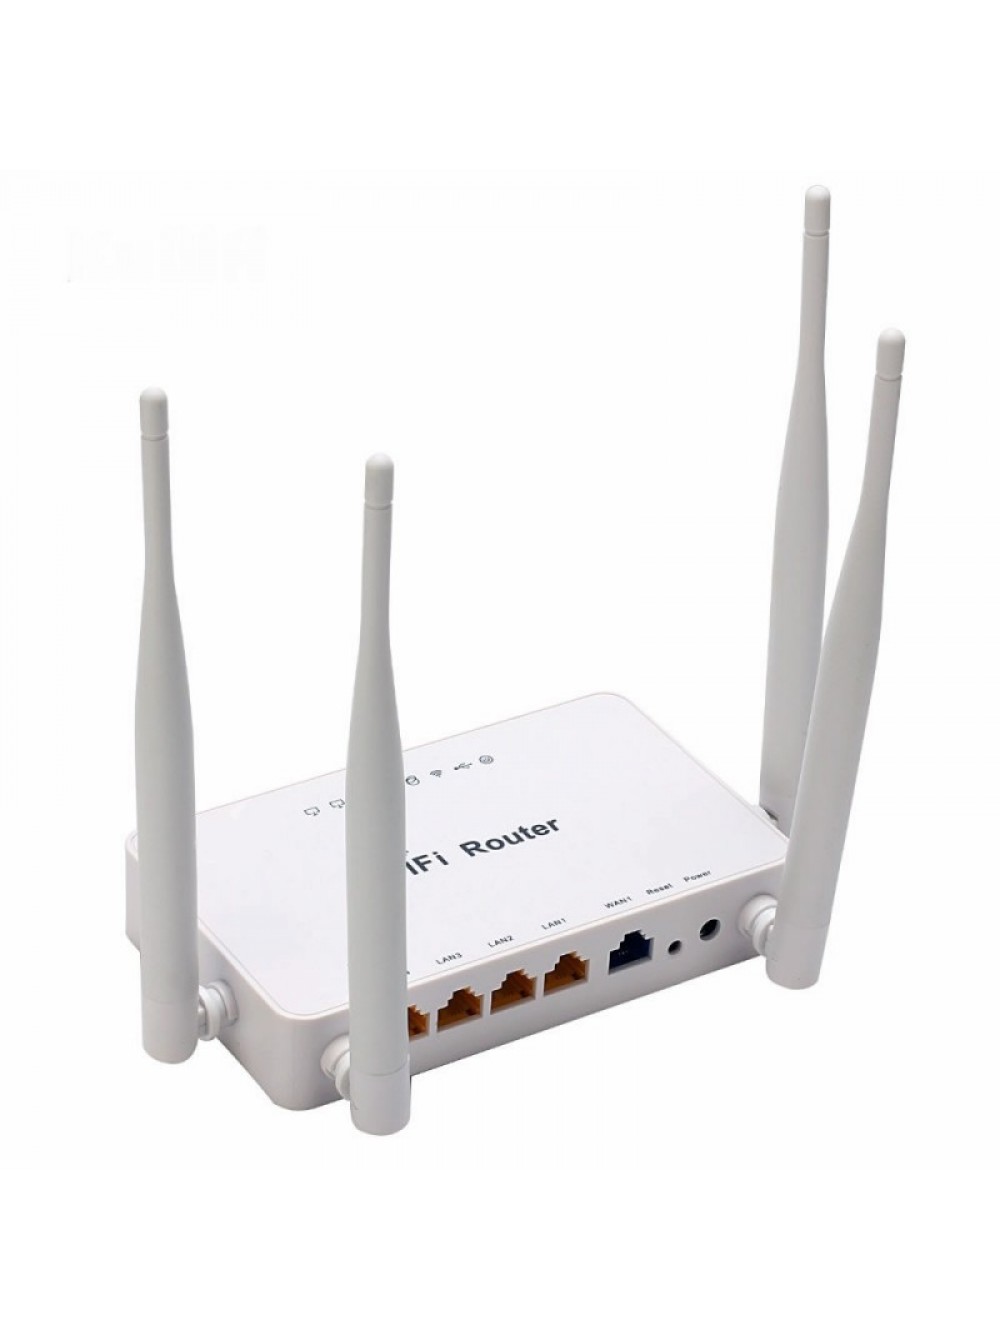 Zbt 4g. Wi-Fi роутер ZBT we1626. WIFI роутер ZBT we 1626. Wi-Fi роутер SM-link we1626. Роутер USB-WIFI ZBT we1626.